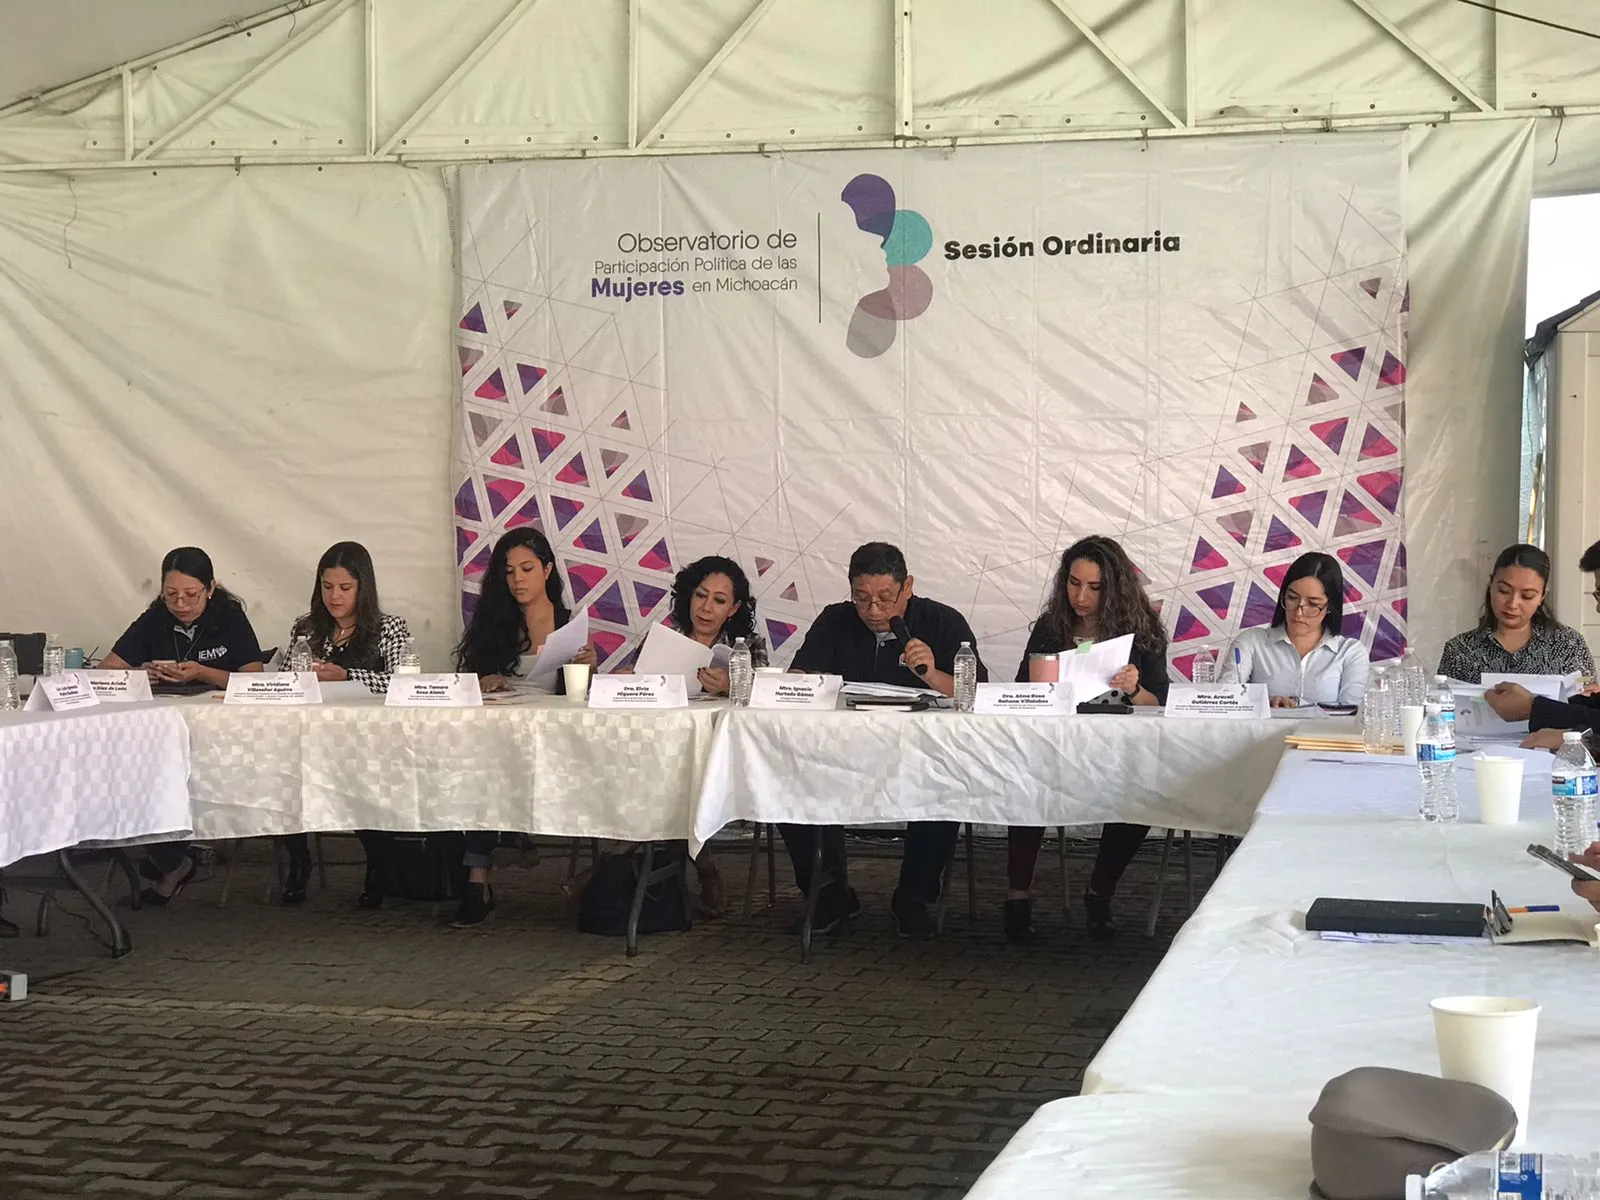 Observatorio de Partición Política de las Mujeres sin pronunciarse por violencia en municipios